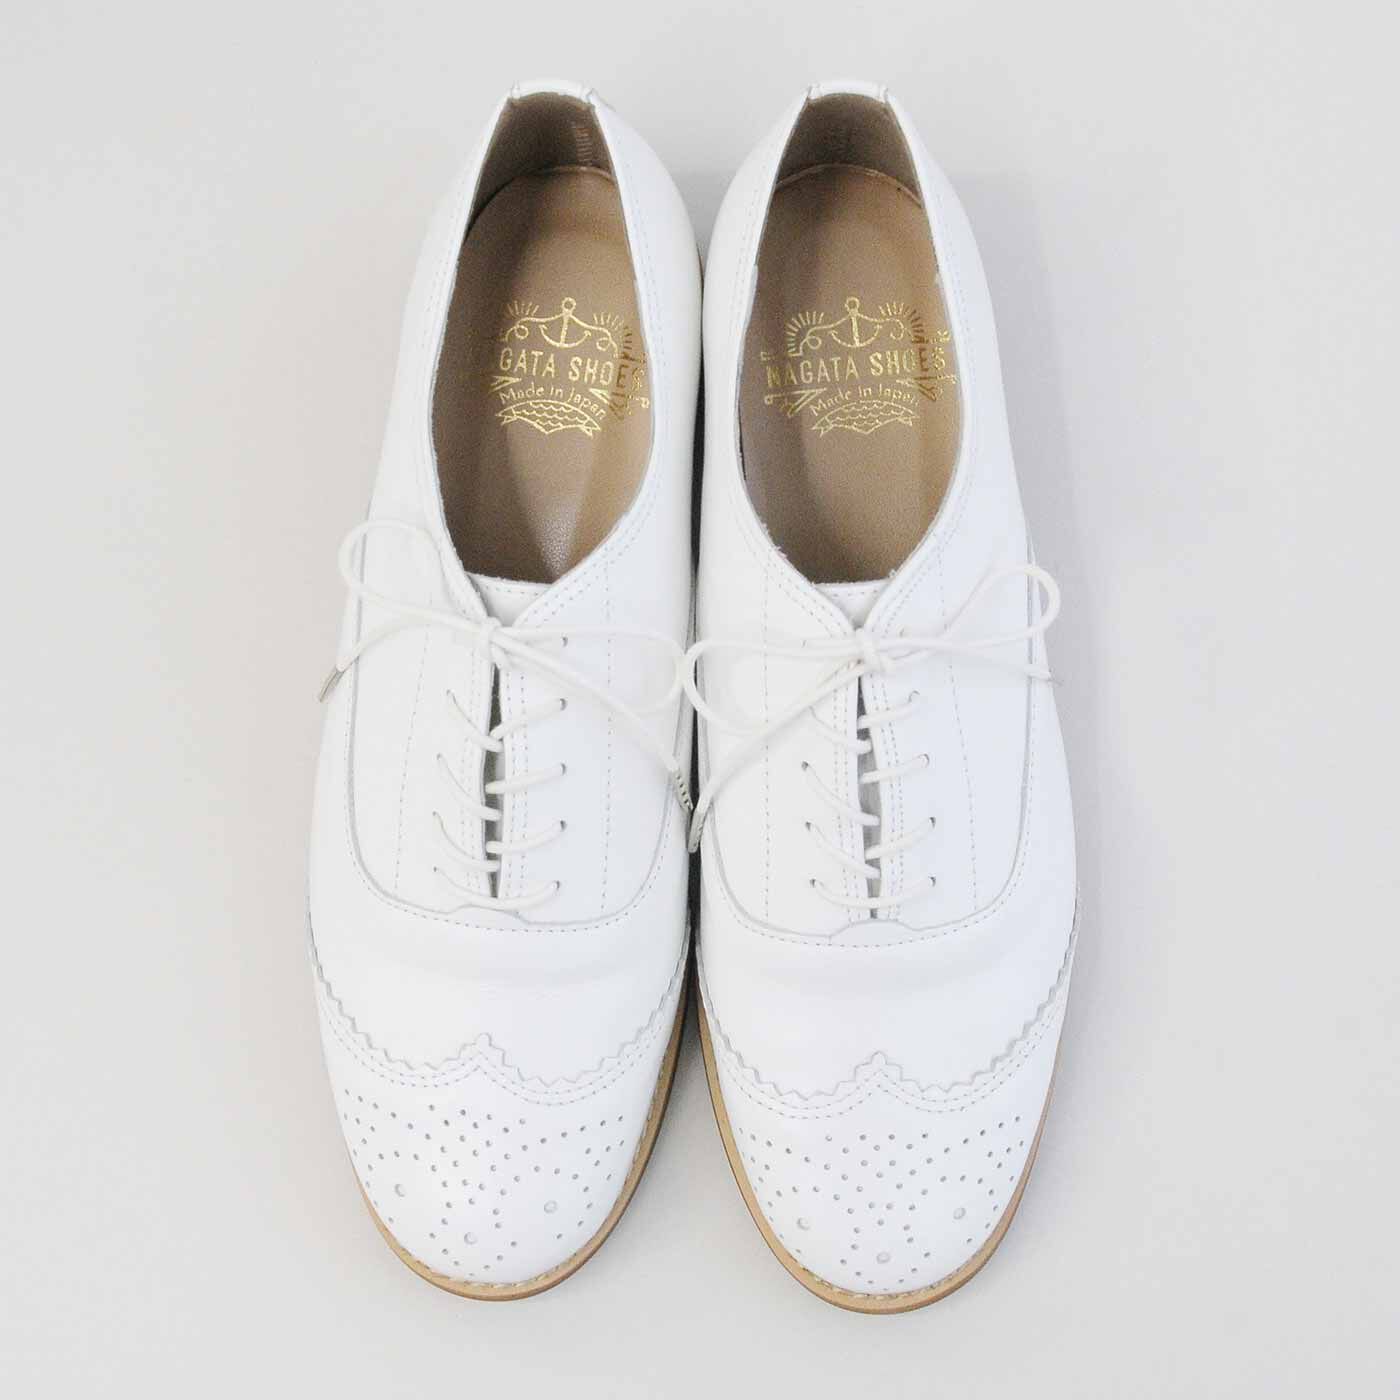 ＆Stories|長田靴職人が叶えた 本革ハーフウィングチップ〈ネージュ〉[本革 靴：日本製]|フランス語で白を意味するネージュは、華やかな存在感が魅力。合わせるだけで、コーデが一気に春めきます。